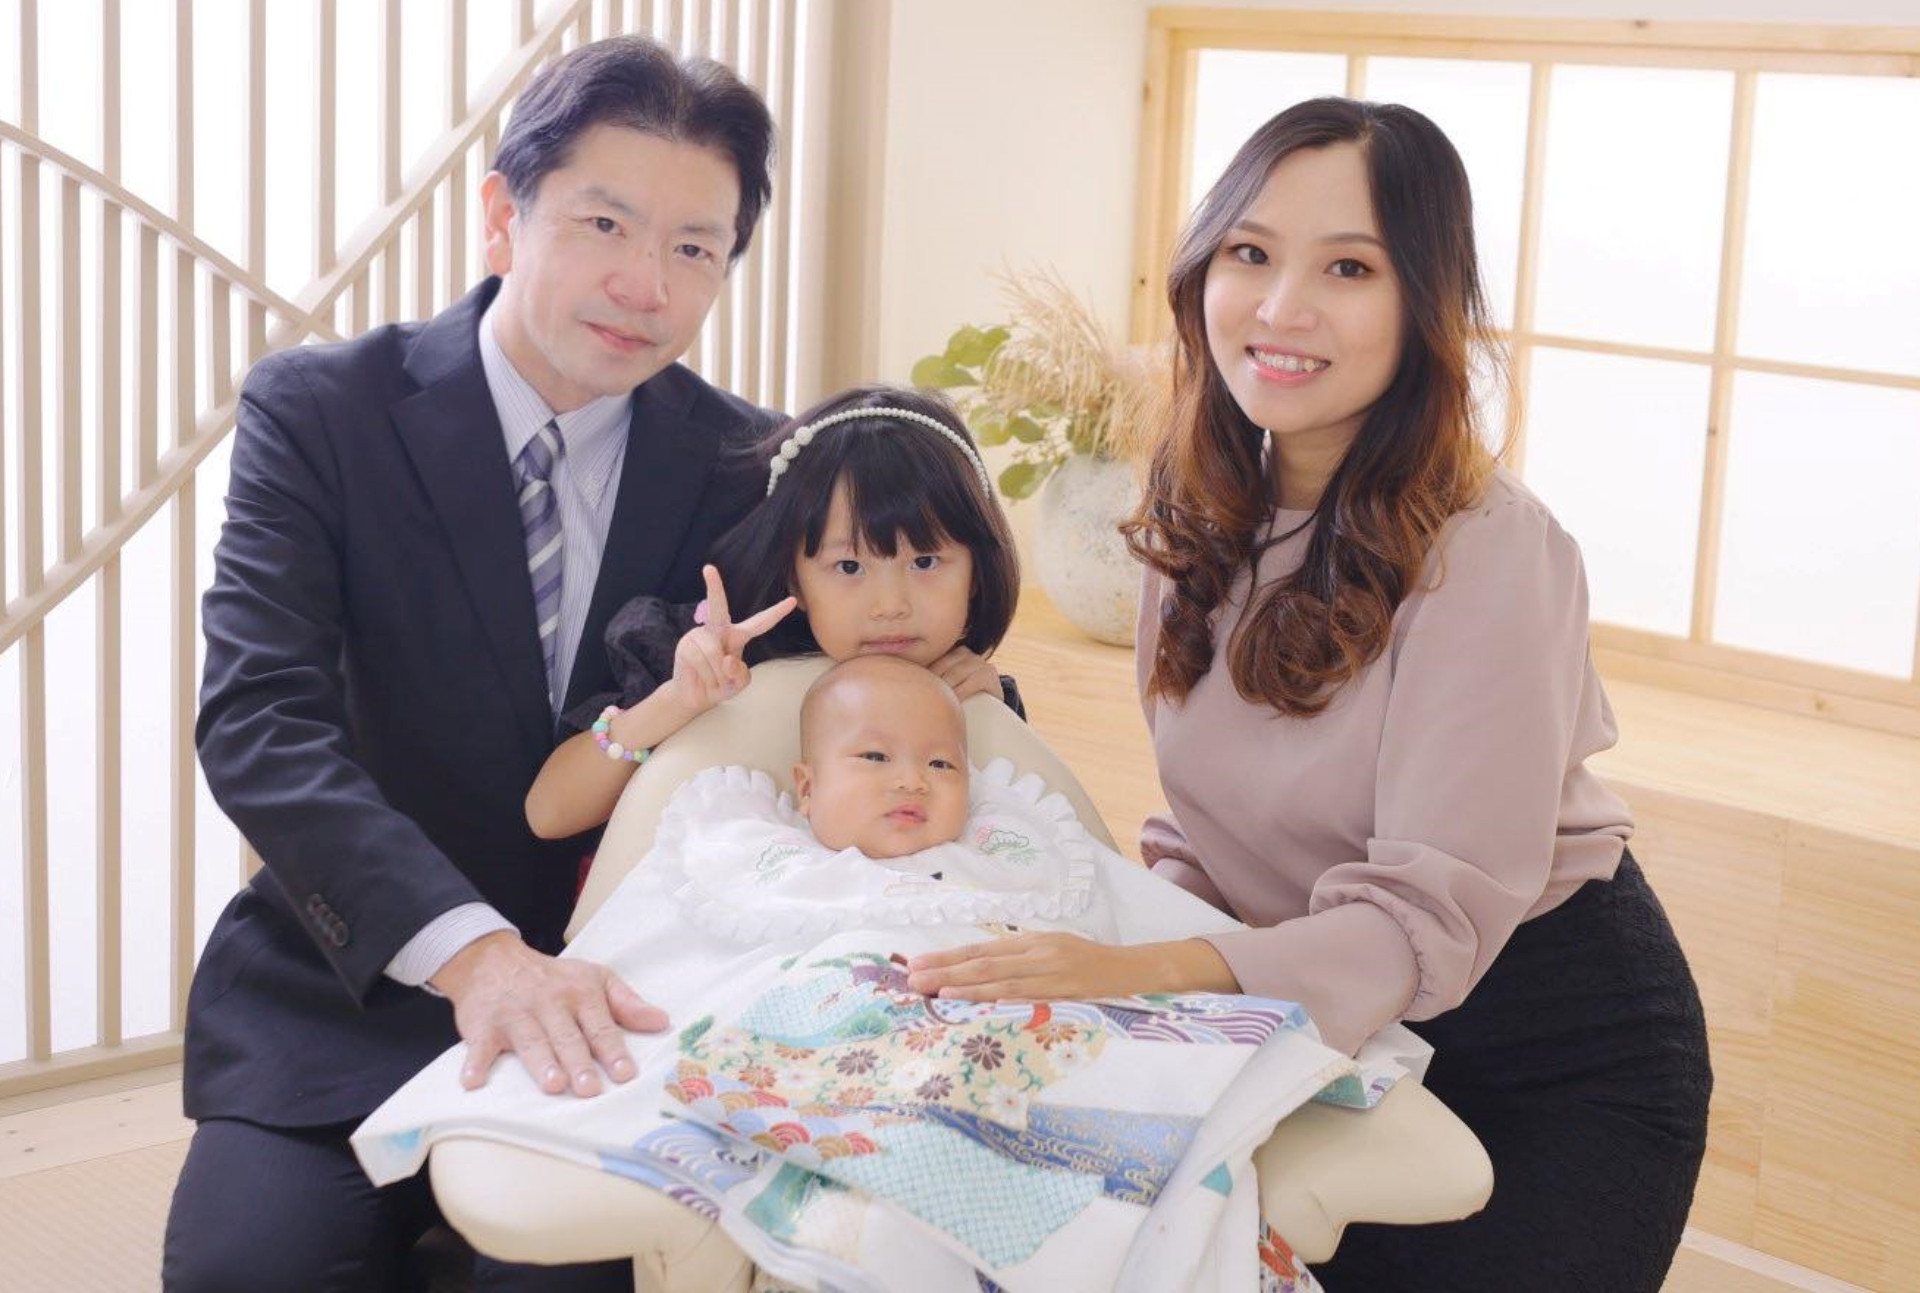 8X Việt lấy chồng Nhật: Không phải làm dâu, tự chuẩn bị cơm cữ - Ảnh 8.